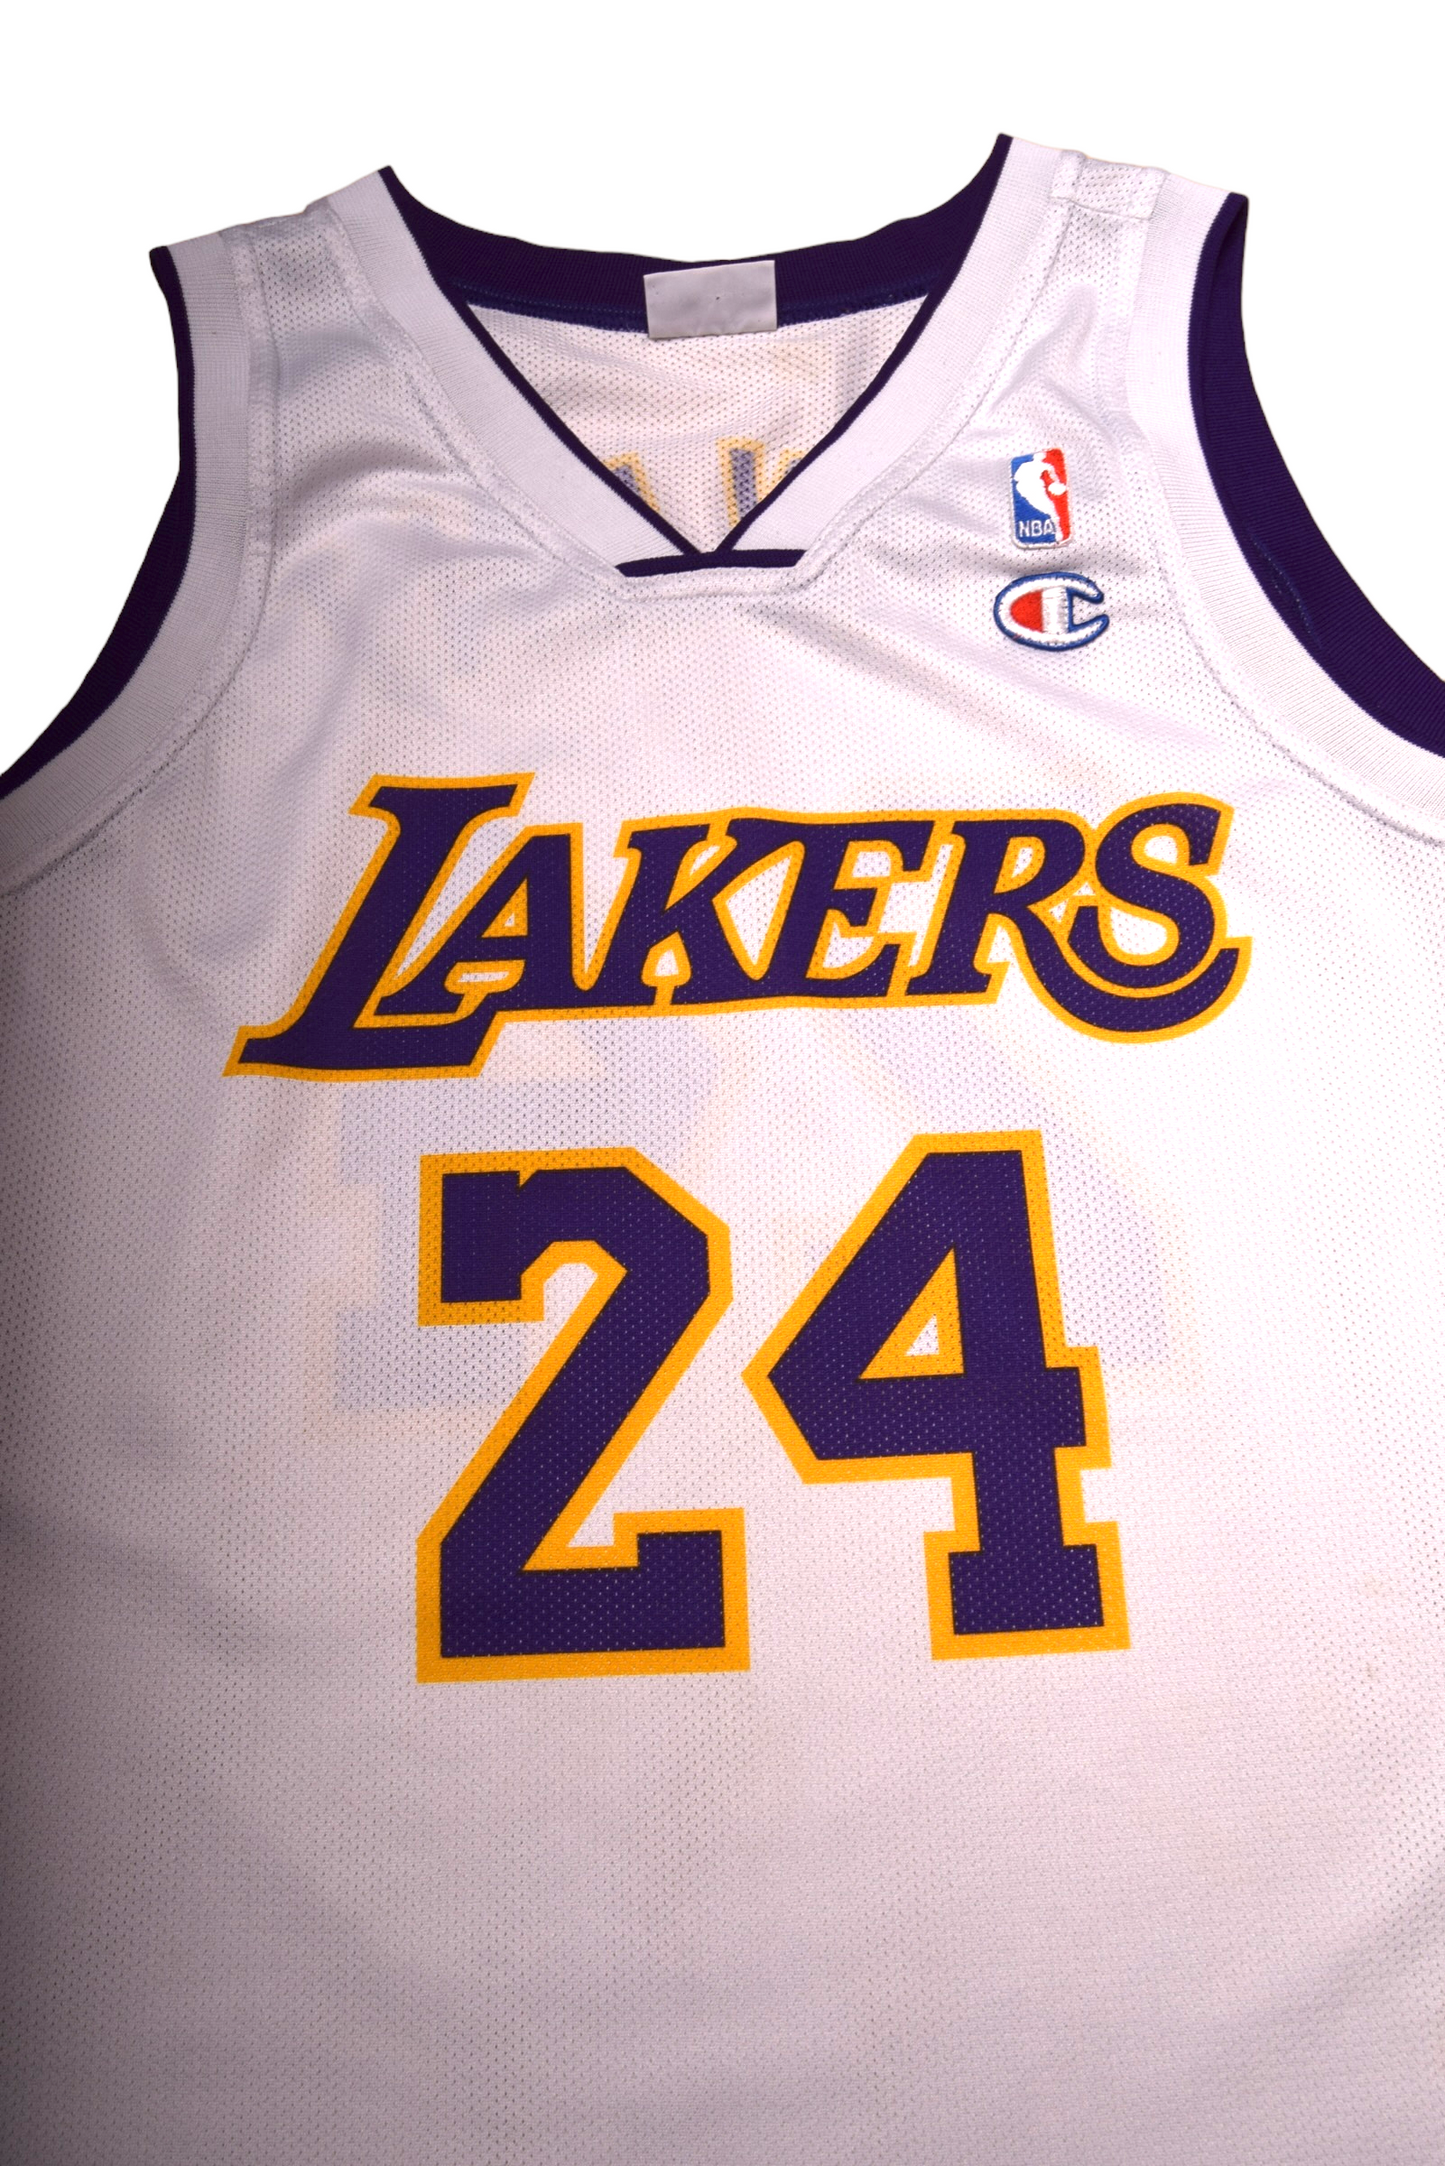 LA Lakers Kobe Bryant Champion # 24 2009-2010 White Yellow Purple Size L